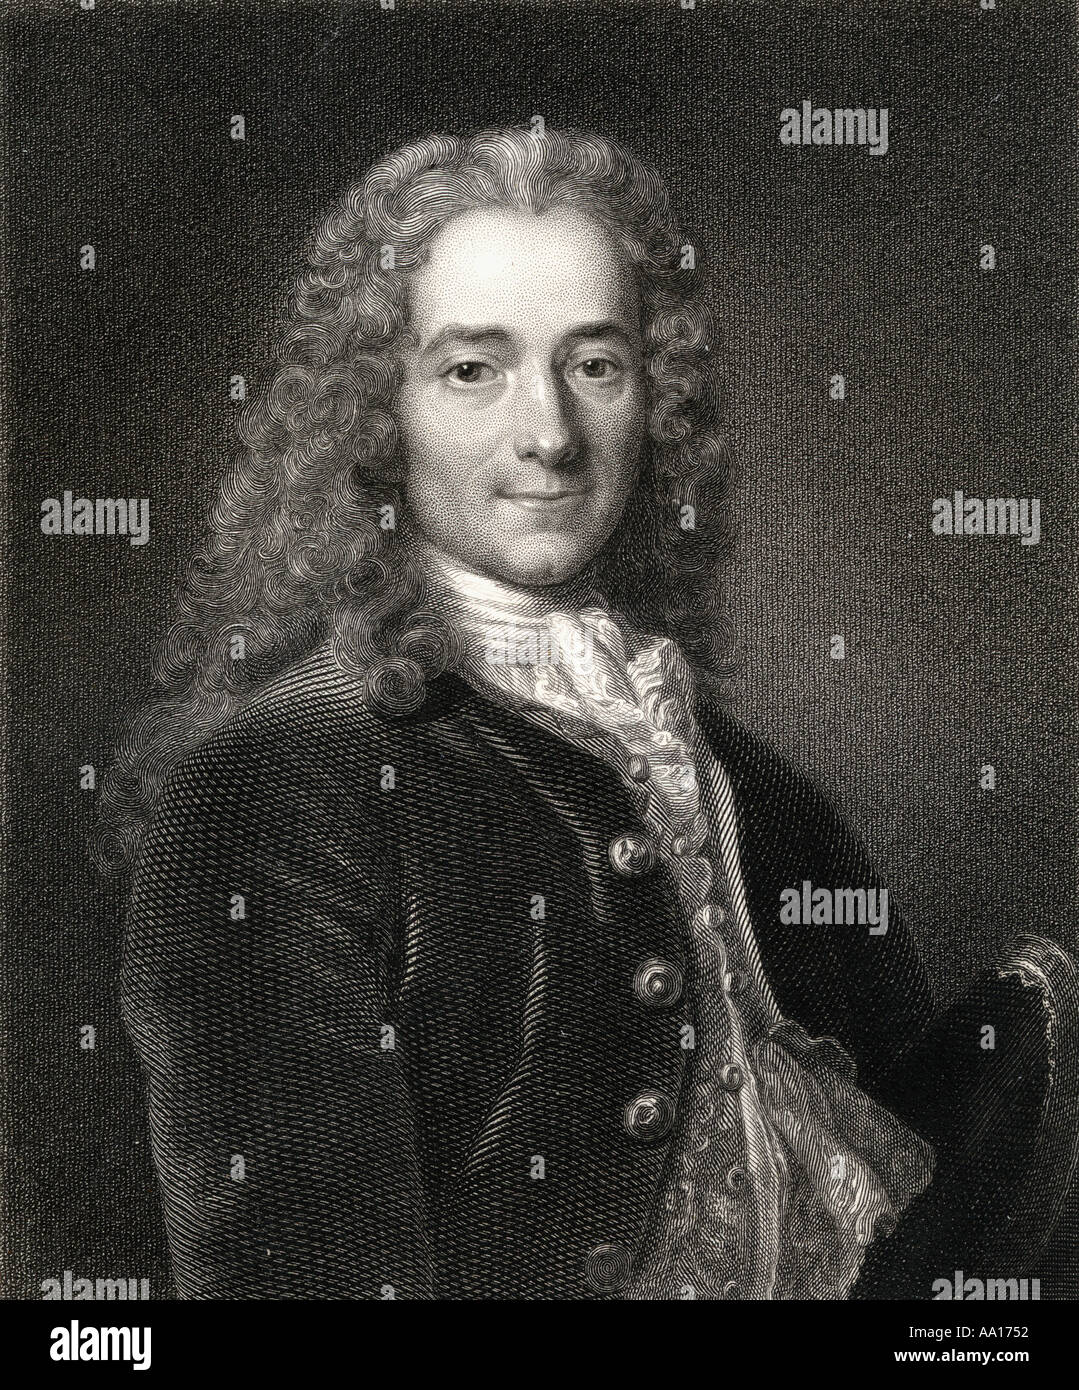 François-Marie Arouet alias Voltaire, 1694 - 1778. Der französische Schriftsteller, Historiker und Philosoph. Stockfoto